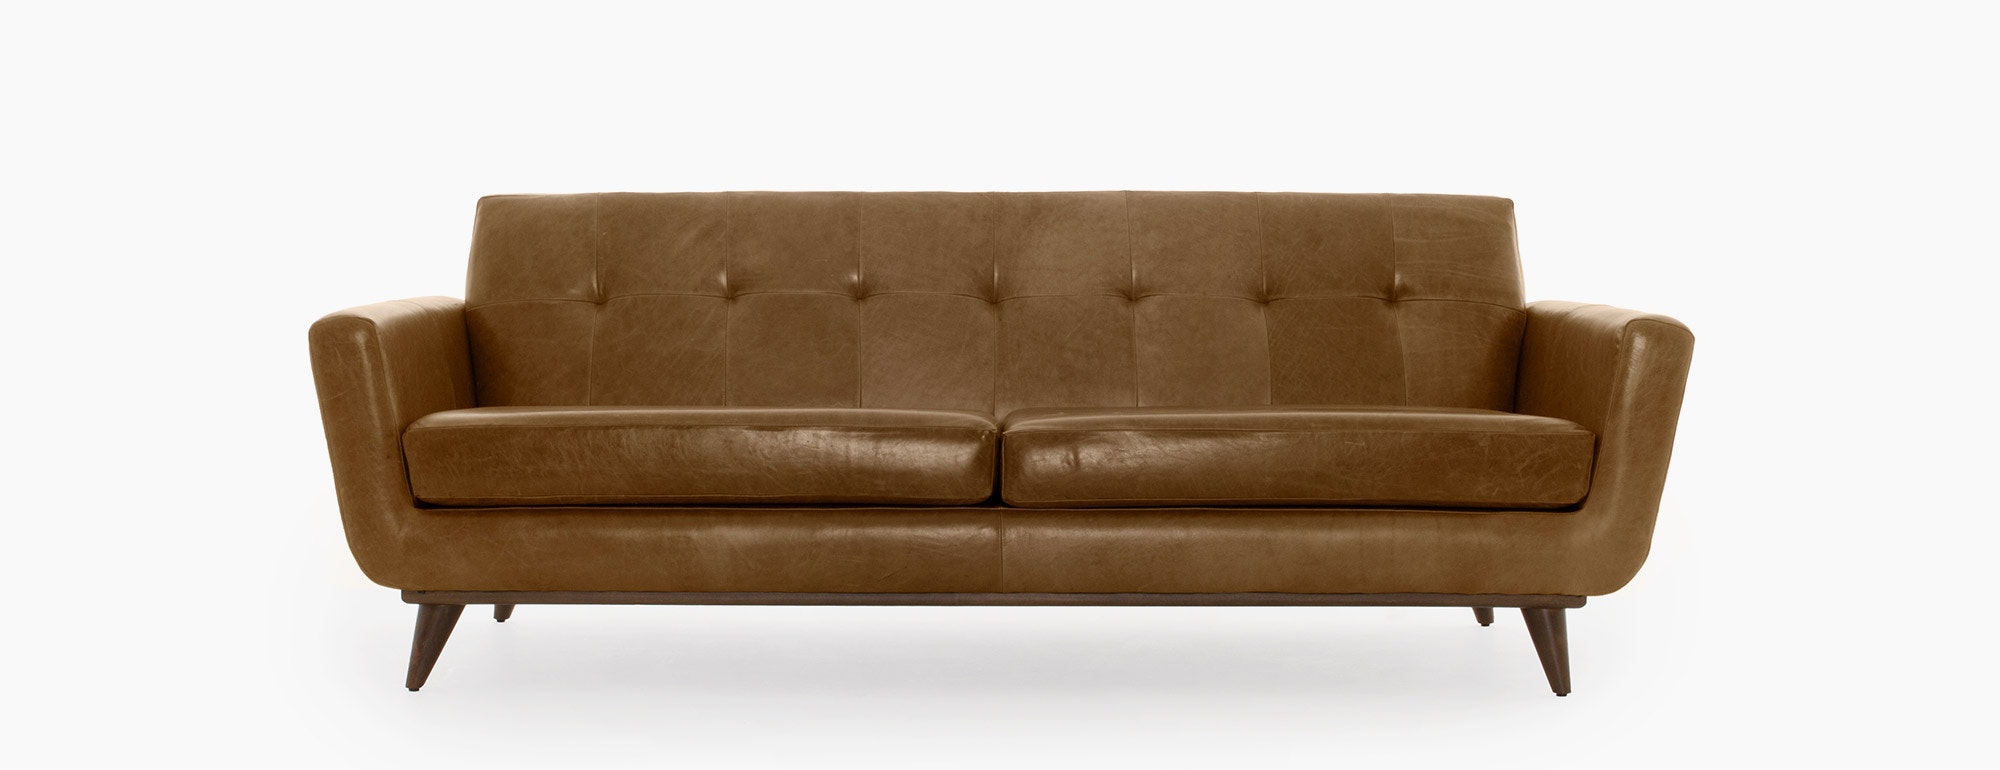 joybird logan leather sofa